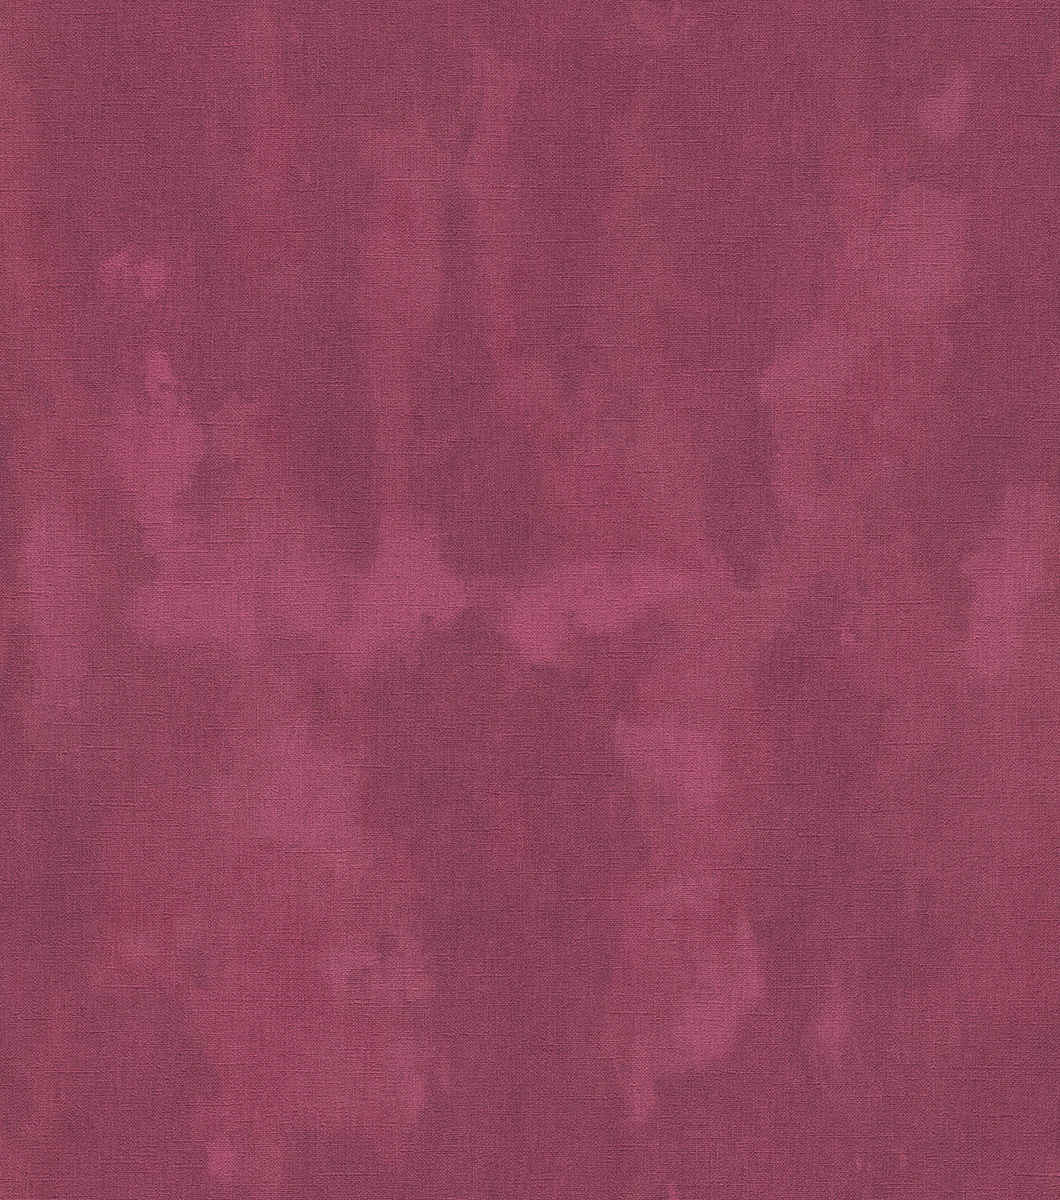 Vintage hatású antikolt mintás uni tapéta